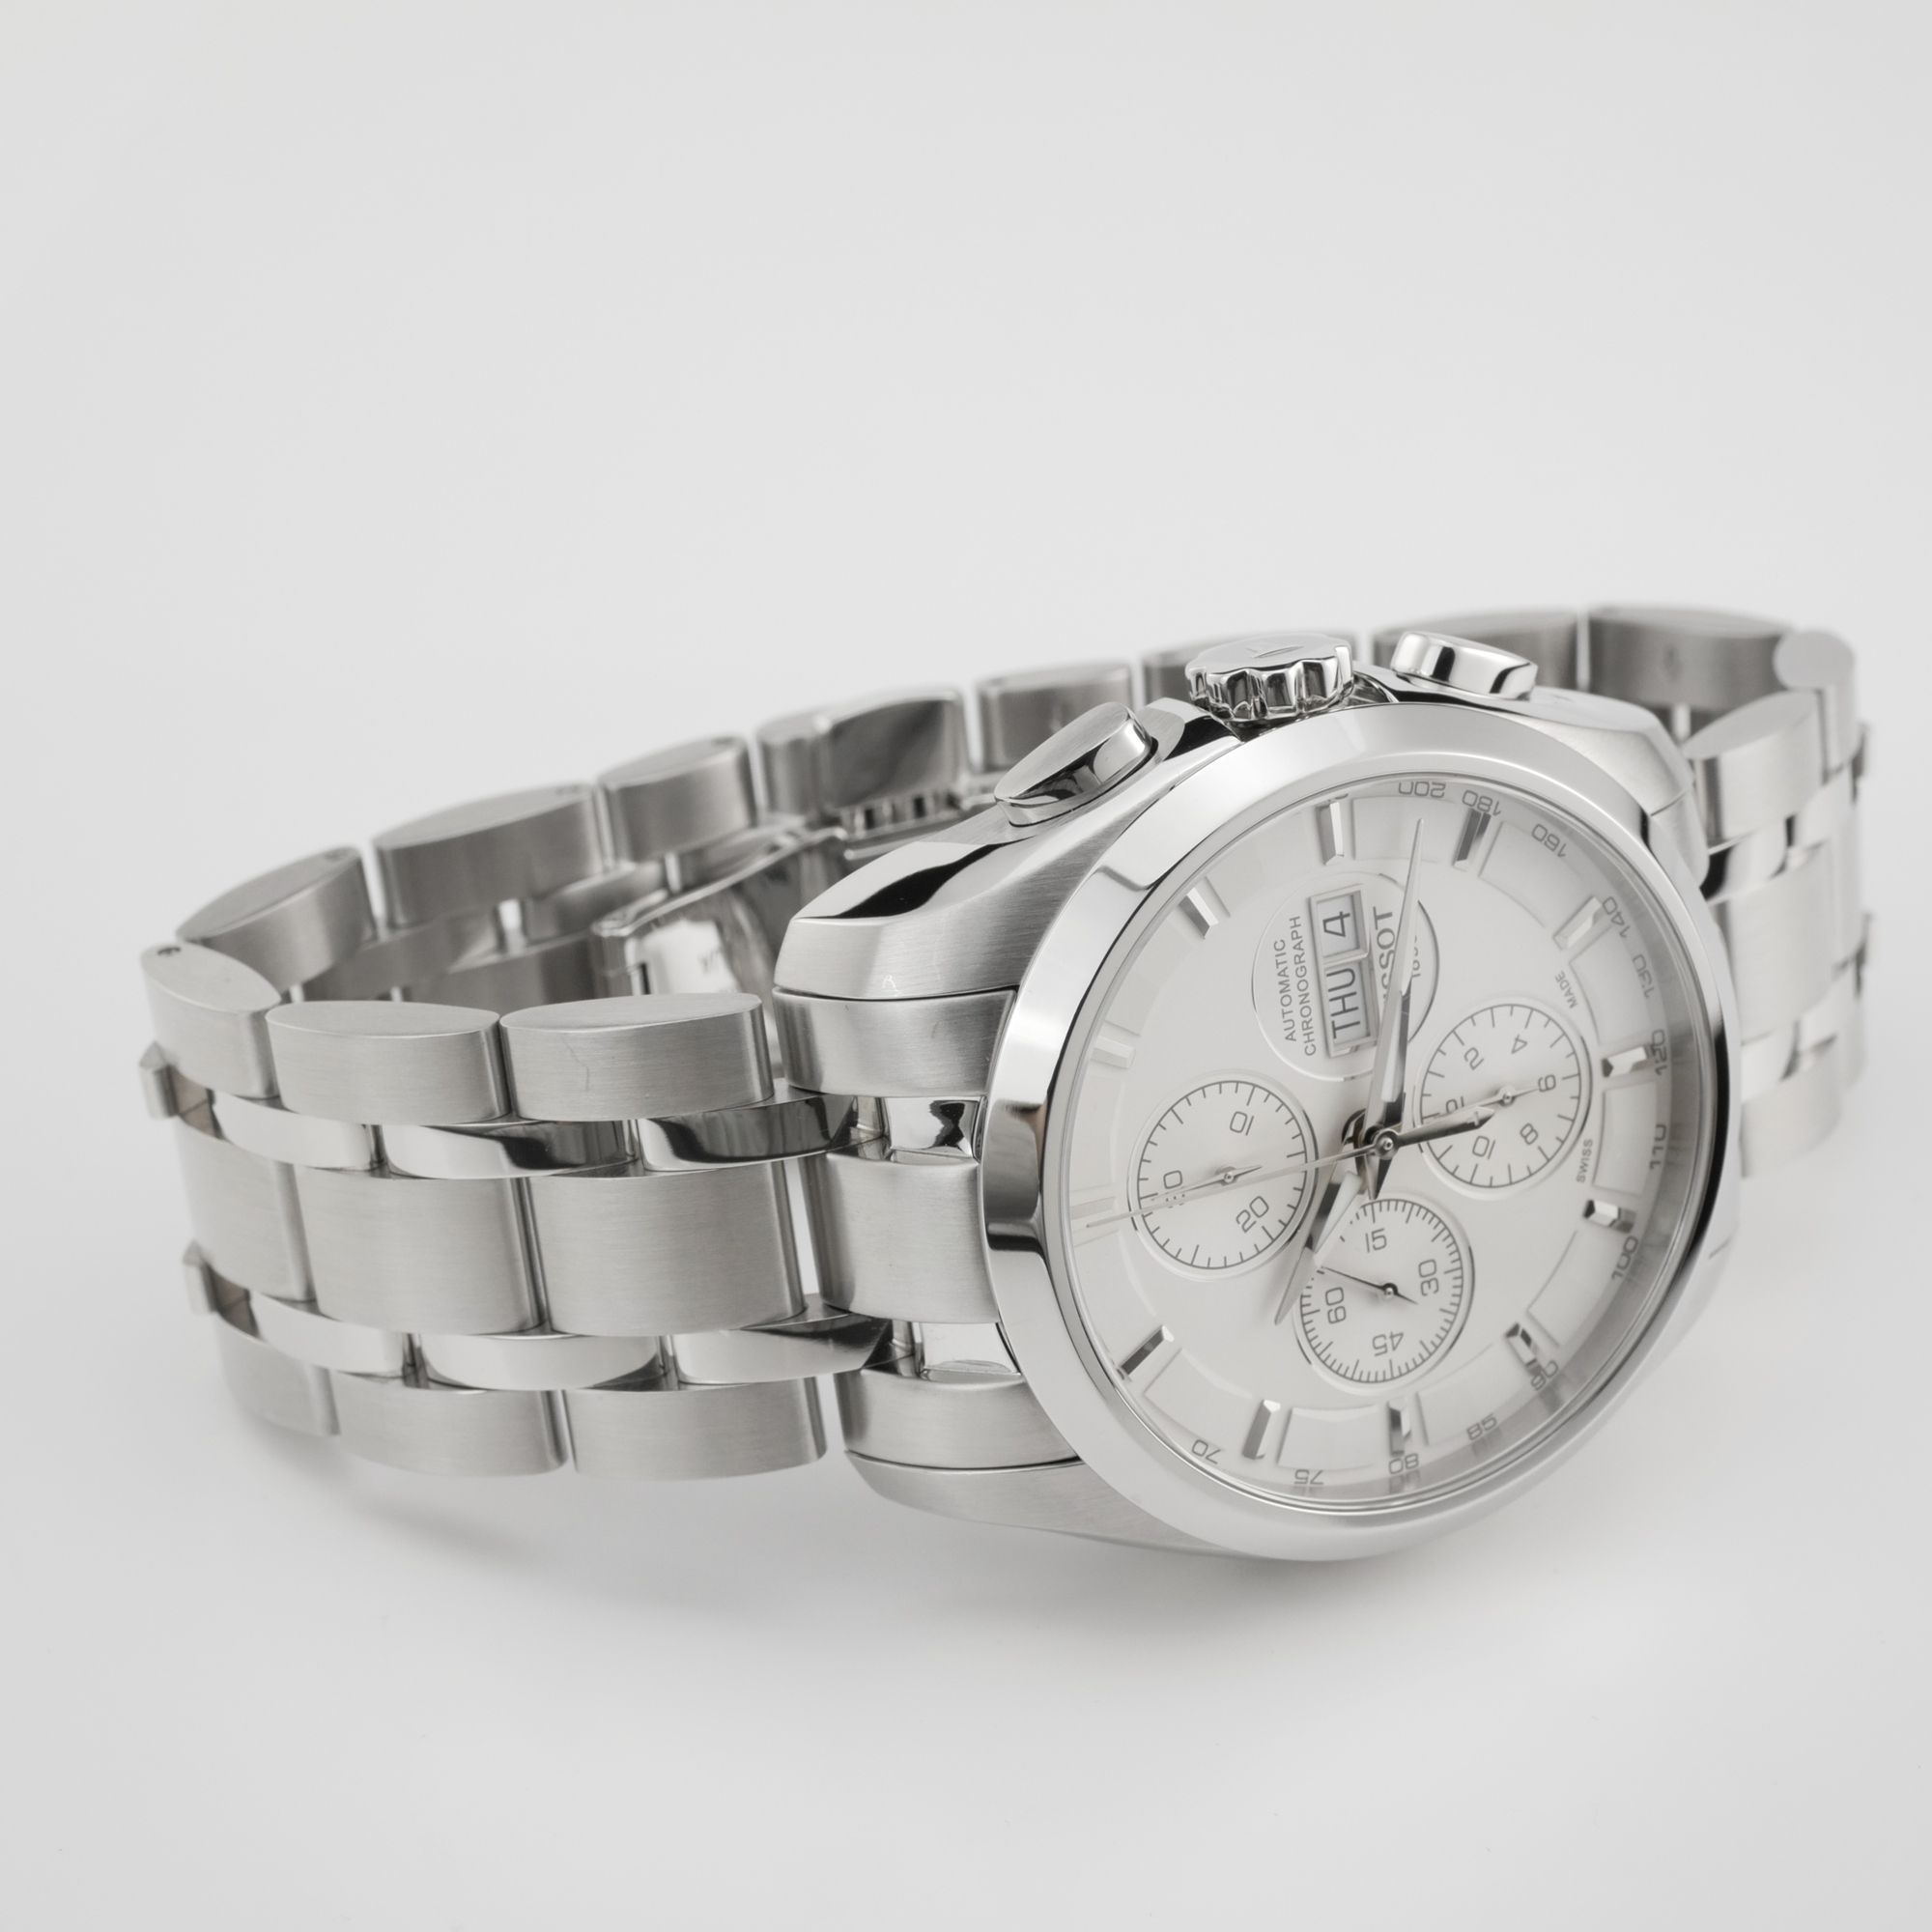 Tissot Couturier Chronograph Automatic Men's Watch T035.614.11.031.00